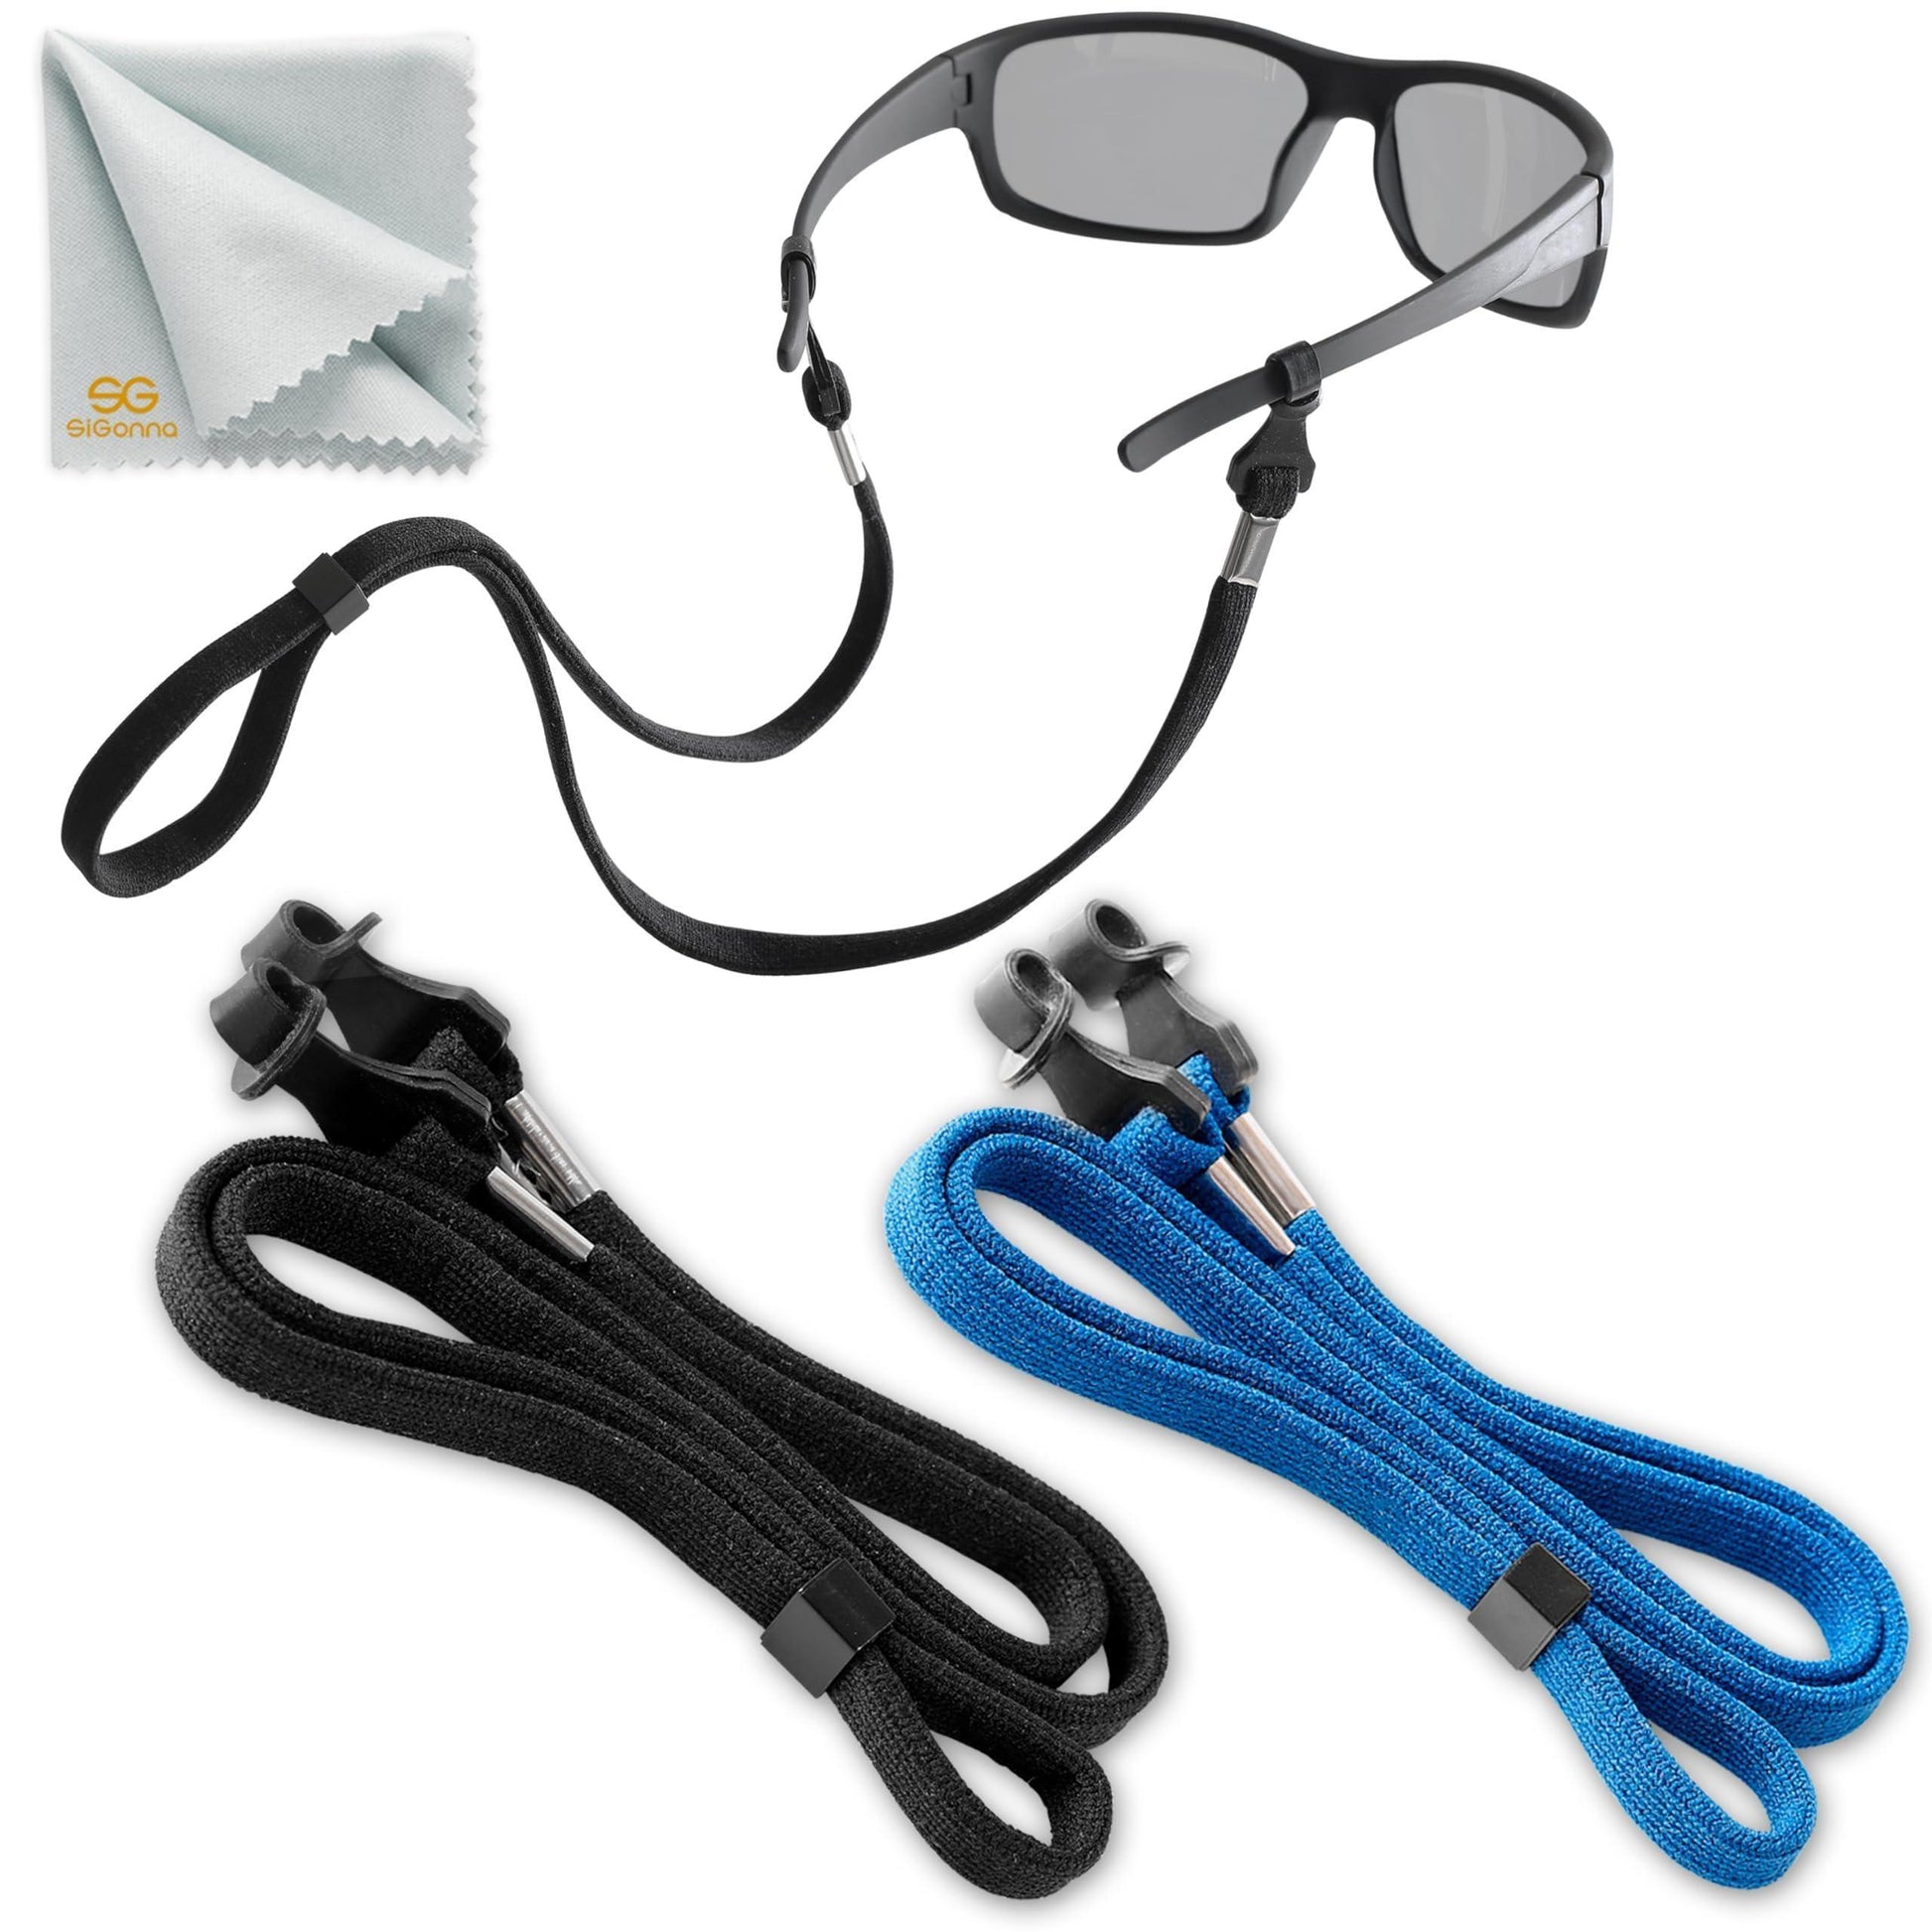 SIGONNA Eye Glasses String Holder Strap - Eyeglass Straps Cords for Men Women - Eyeglass Holders Around Neck - Sunglasses String Chain Lanyard Retainer - 2 Pcs (Black Blue) - Loomini